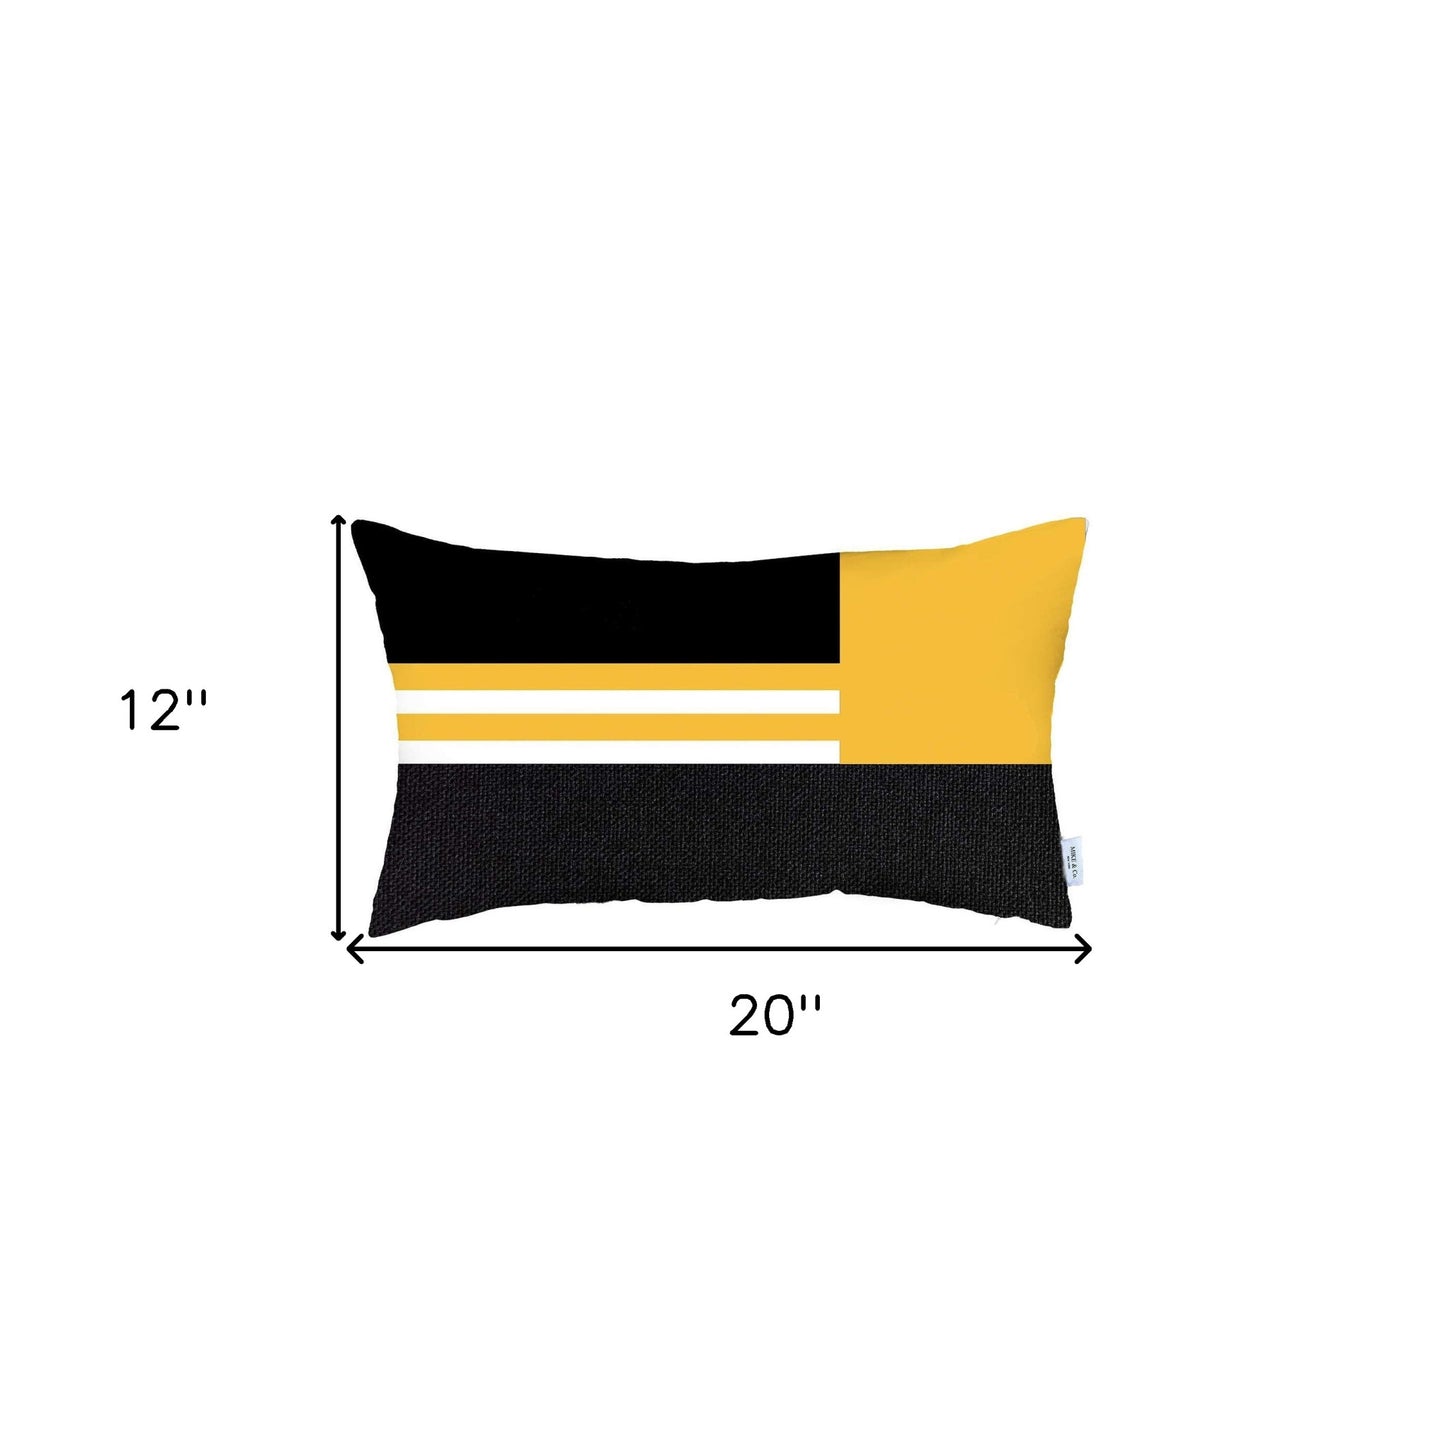 Yellow and Black Geometric Lumbar Throw Pillow